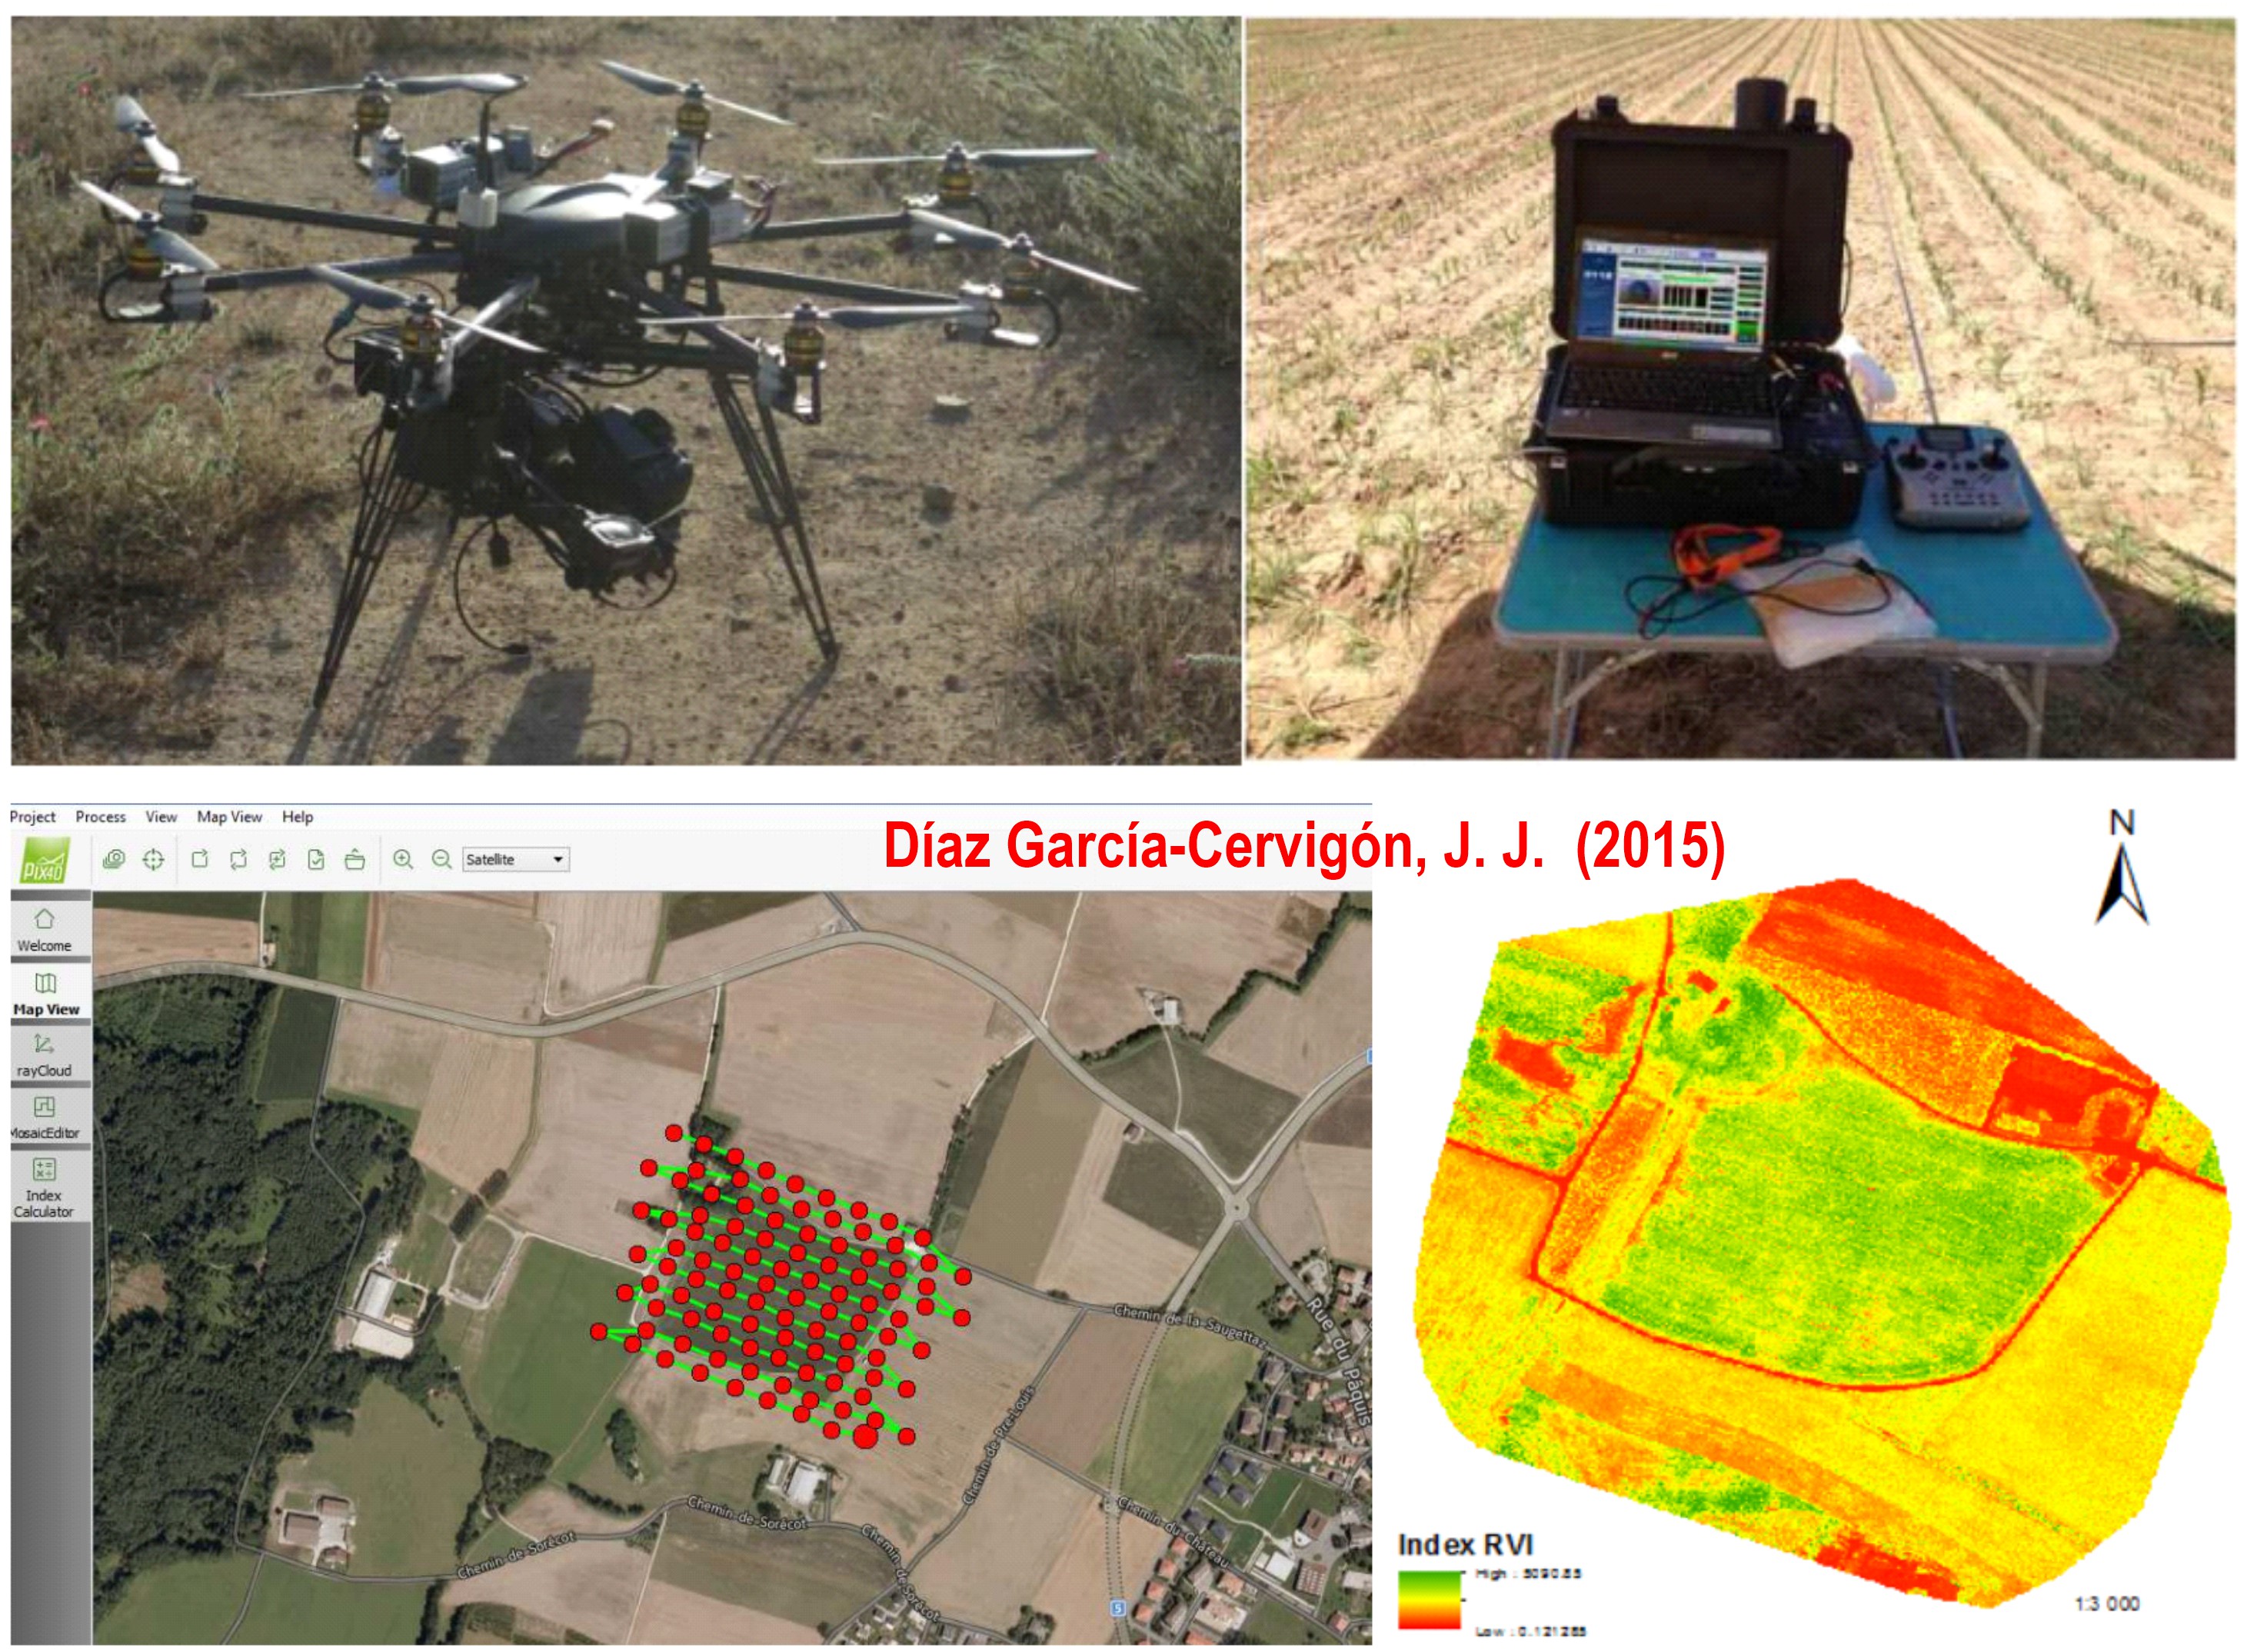 Estudio de índices de vegetación a partir de imágenes aéreas tomadas desde UAS/RPAS y aplicaciones de éstos a la agricultura de precisión. Fuente: Díaz García-Cervigón, J. J. (2015). Trabajo Fin de Máster. https://eprints.ucm.es/31423/